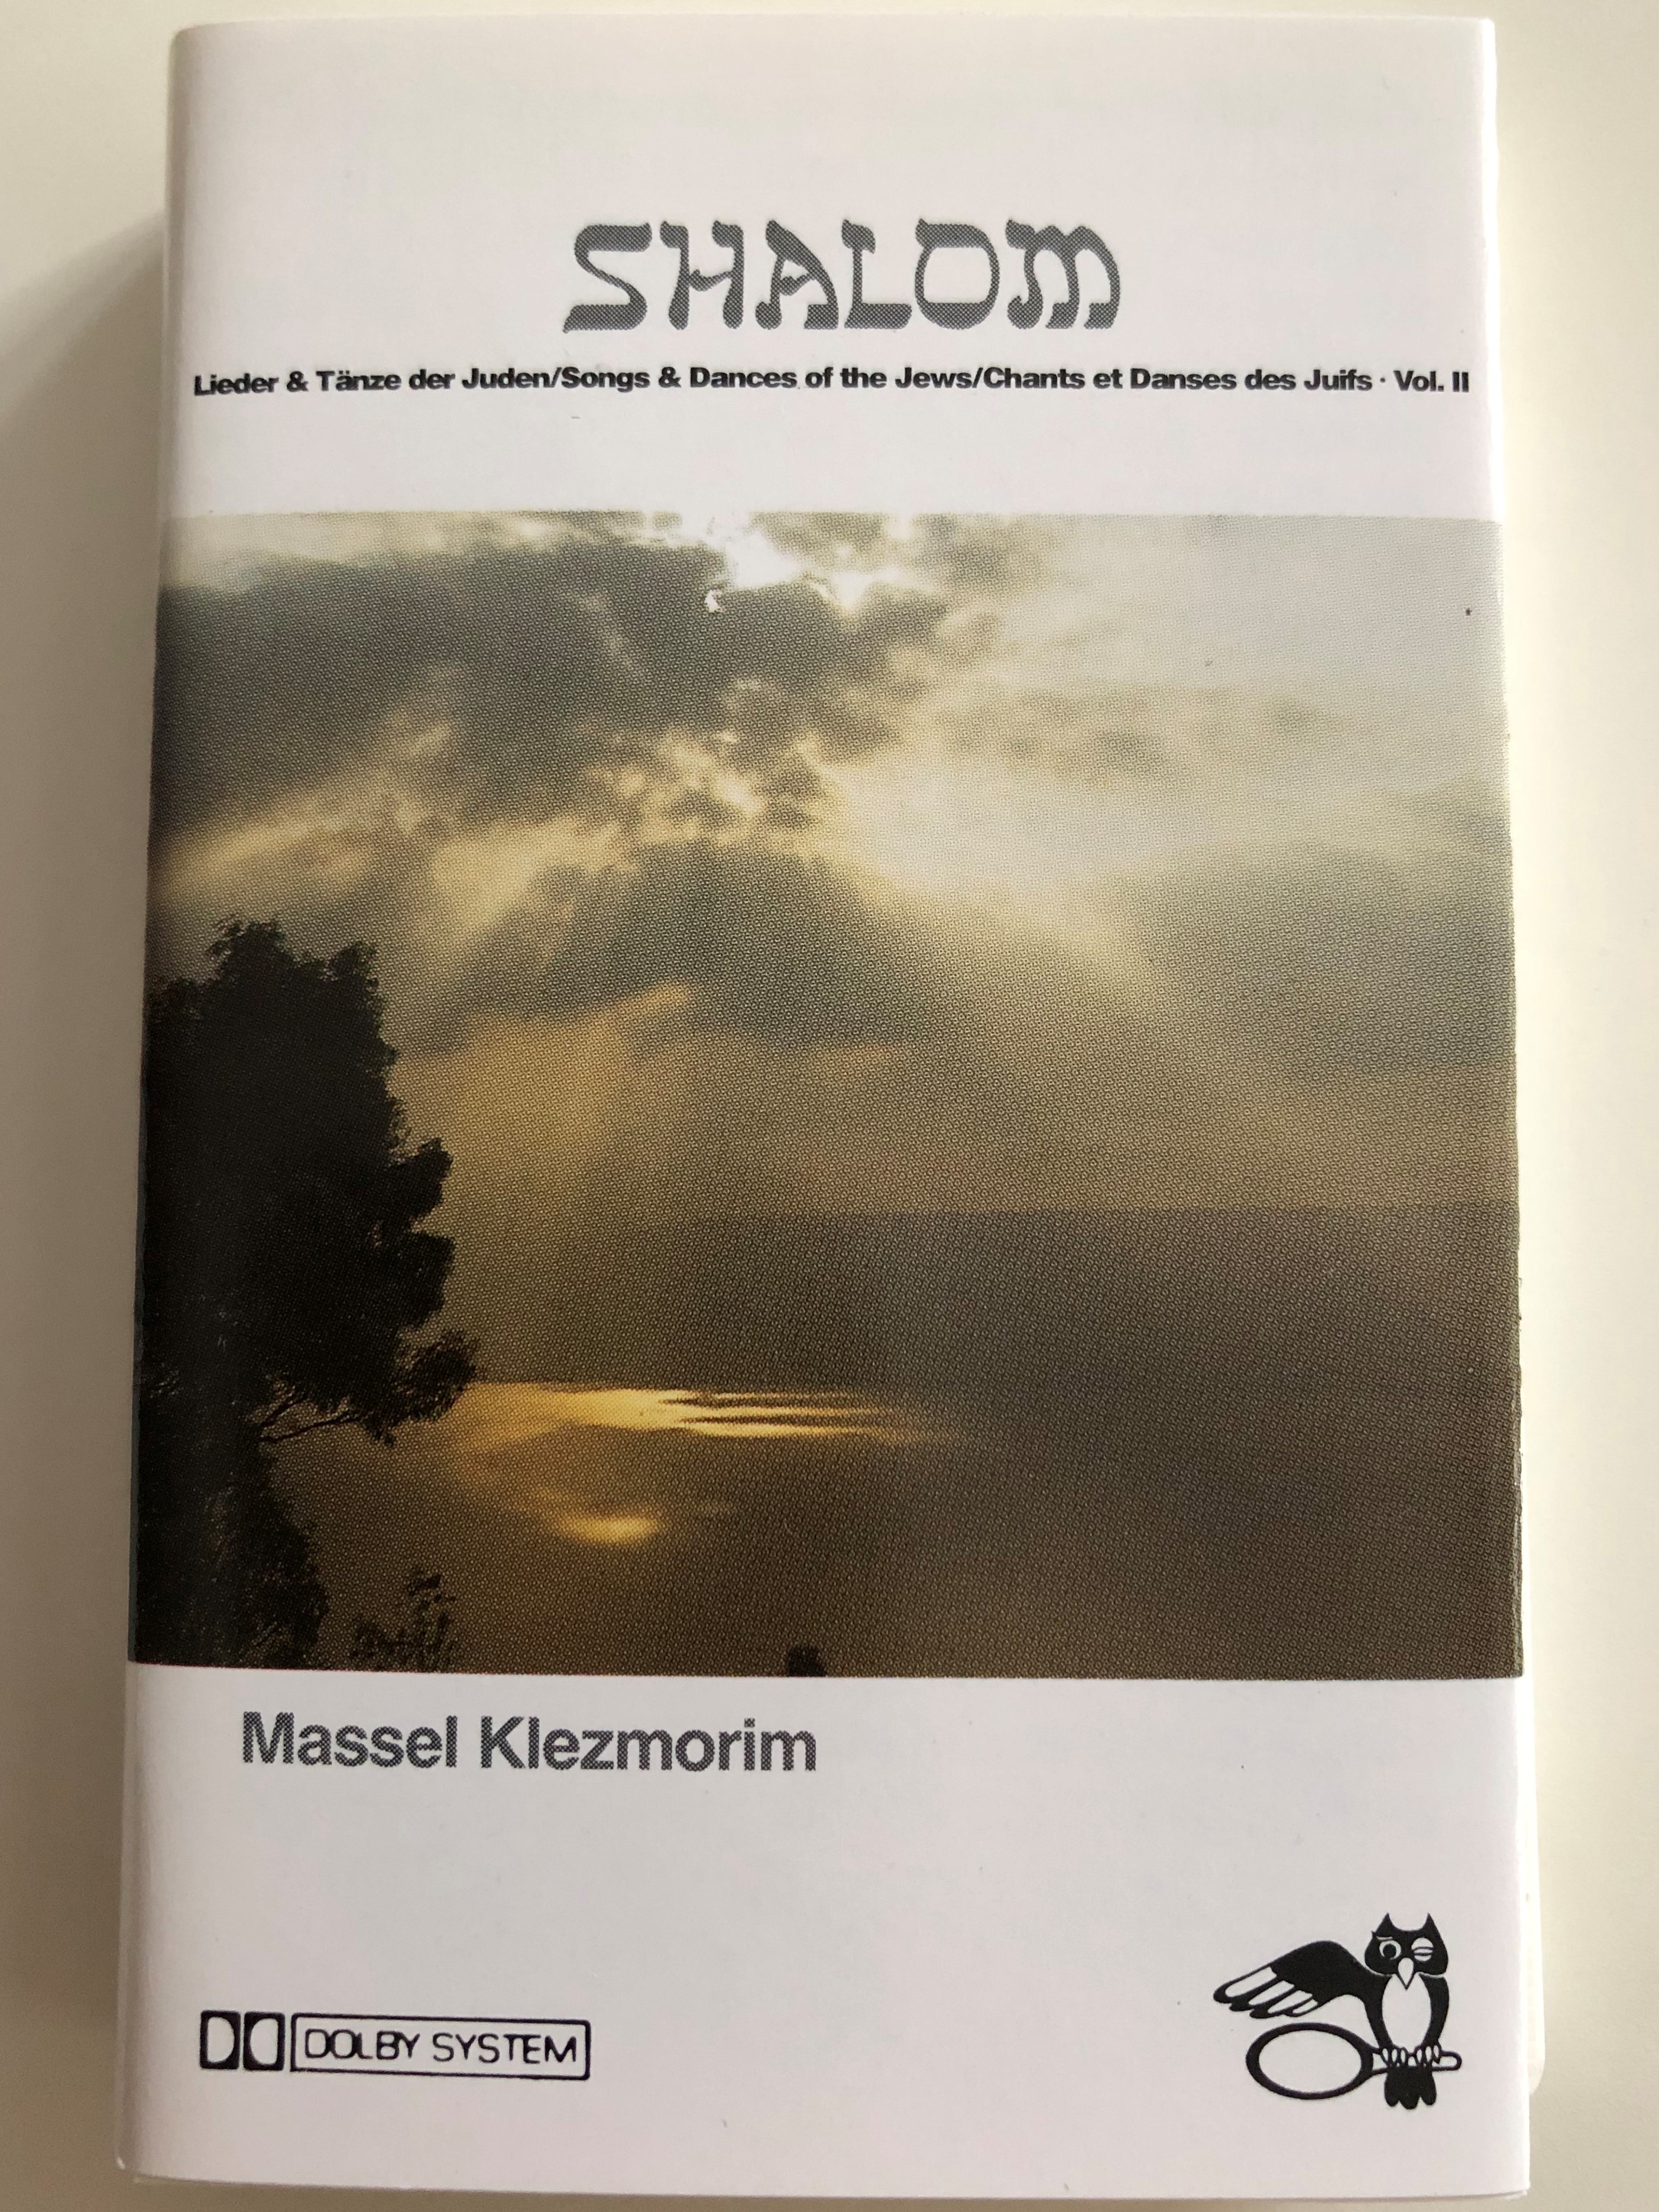 shalom-massel-klezmorim-arc-music-cassette-stereo-eumc-1060-1-.jpg